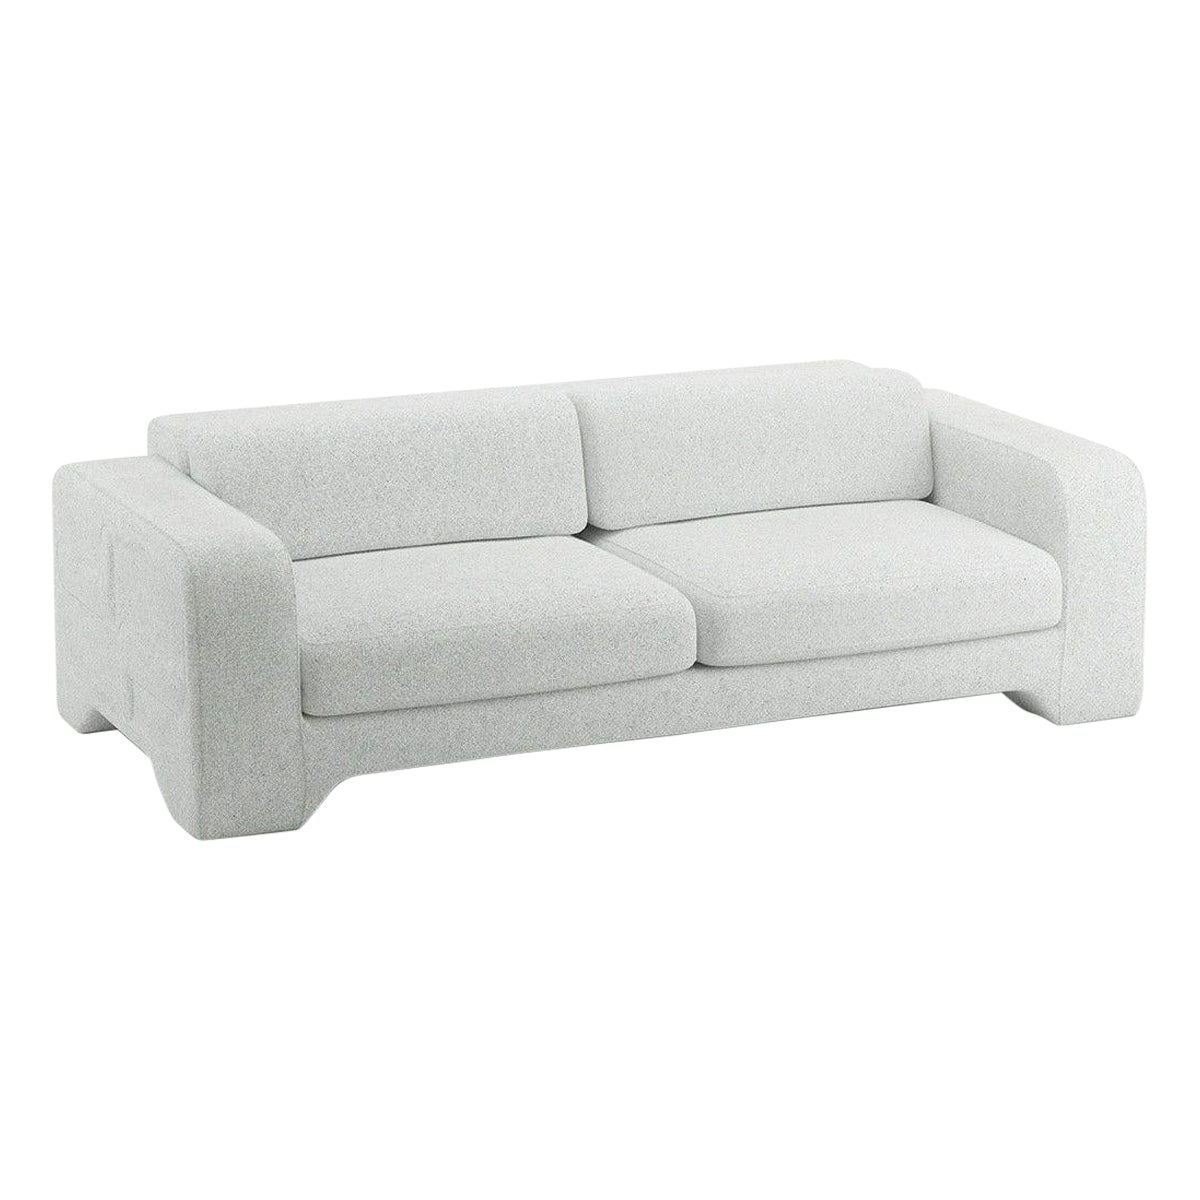 Popus Editions Giovanna 4 Seater Sofa in Cloud Zanzi Linen Fabric For Sale